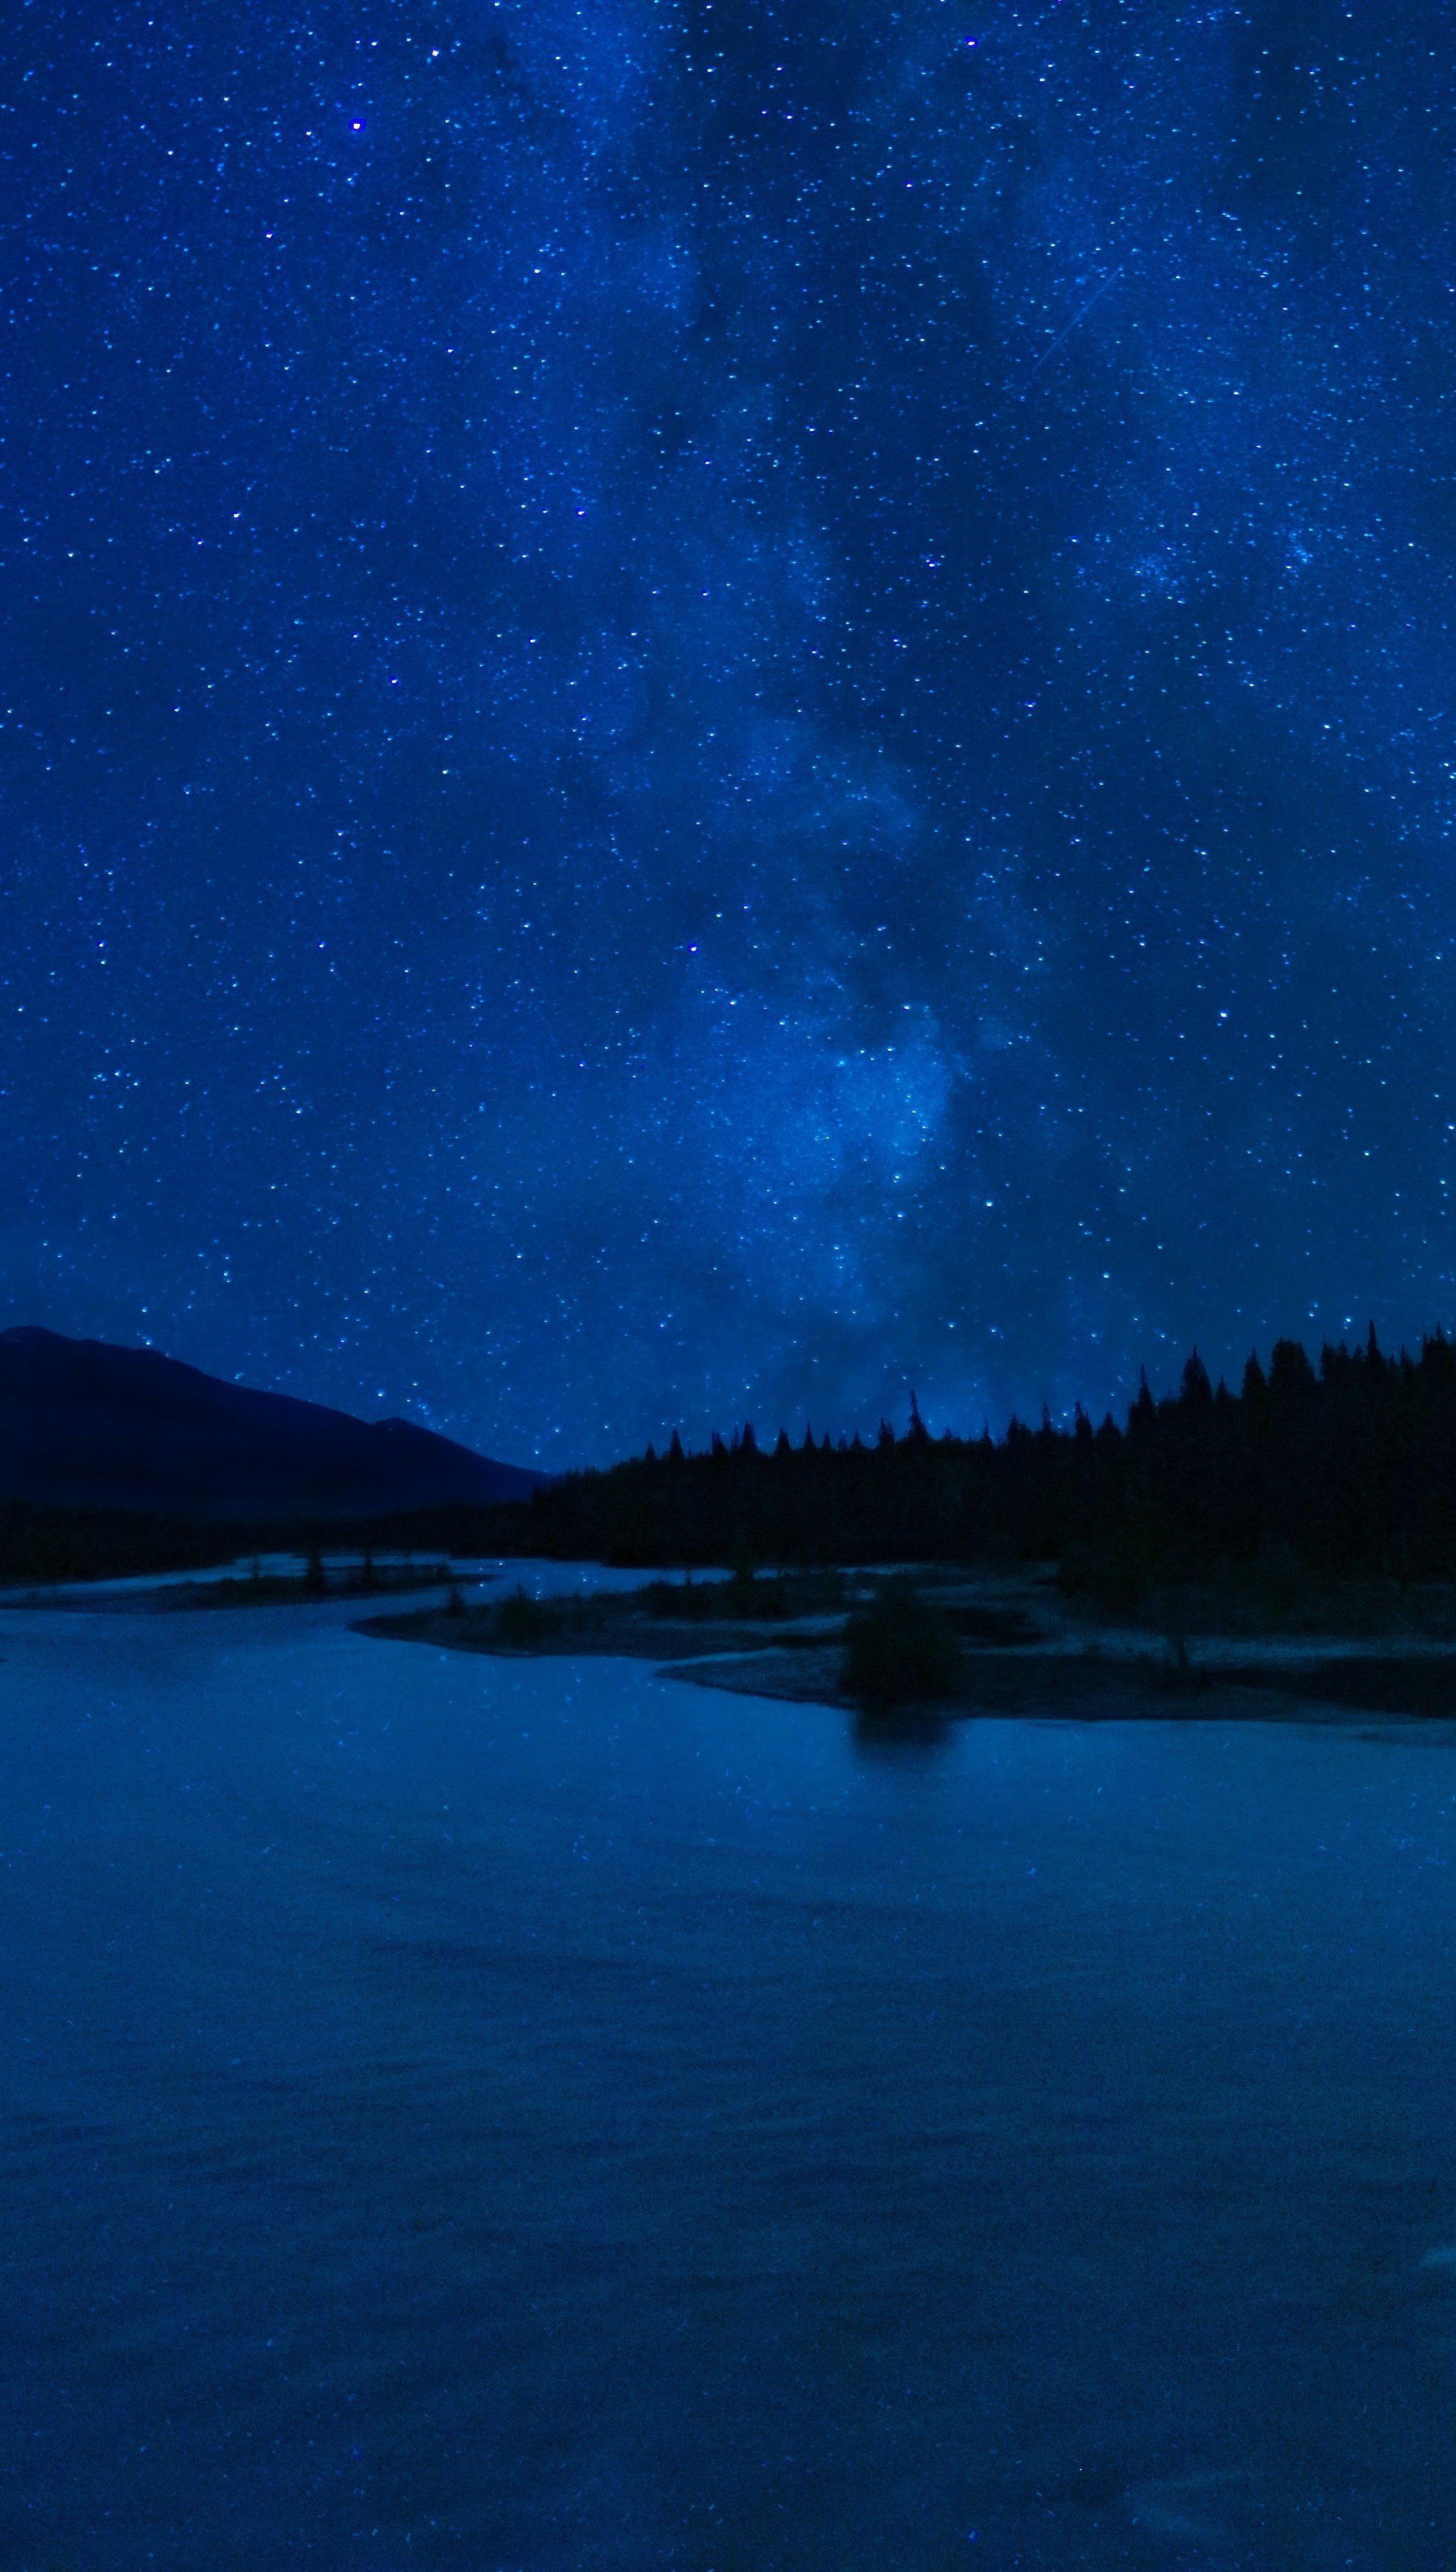 Fondos de pantalla Noche oscura en lago Vertical